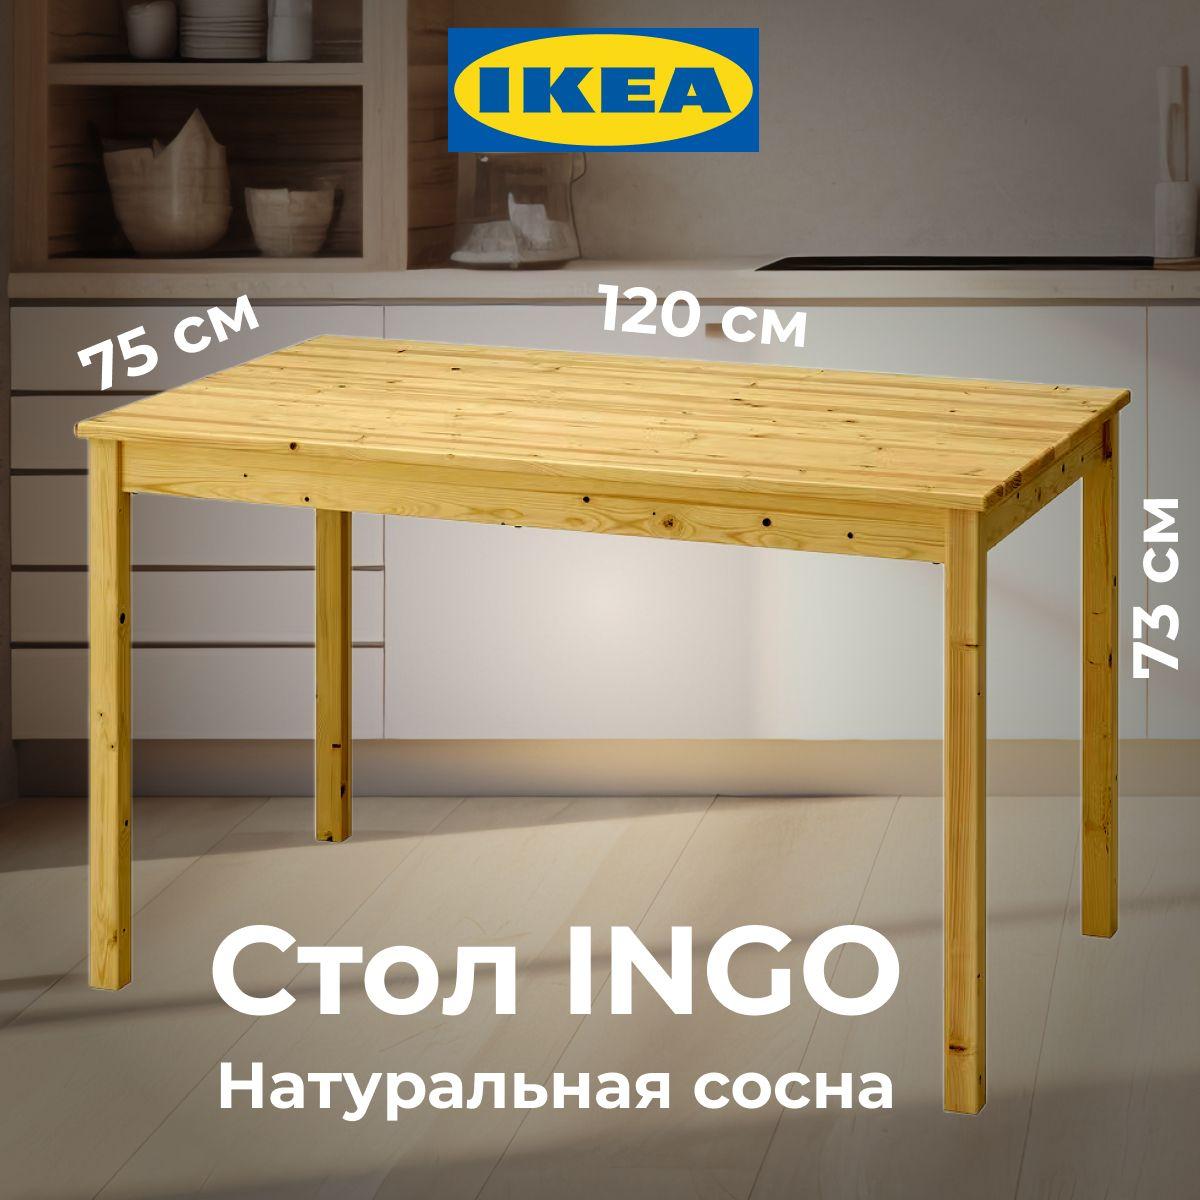 Стол кухонный Икеа Ингу 120x75 см, сосна